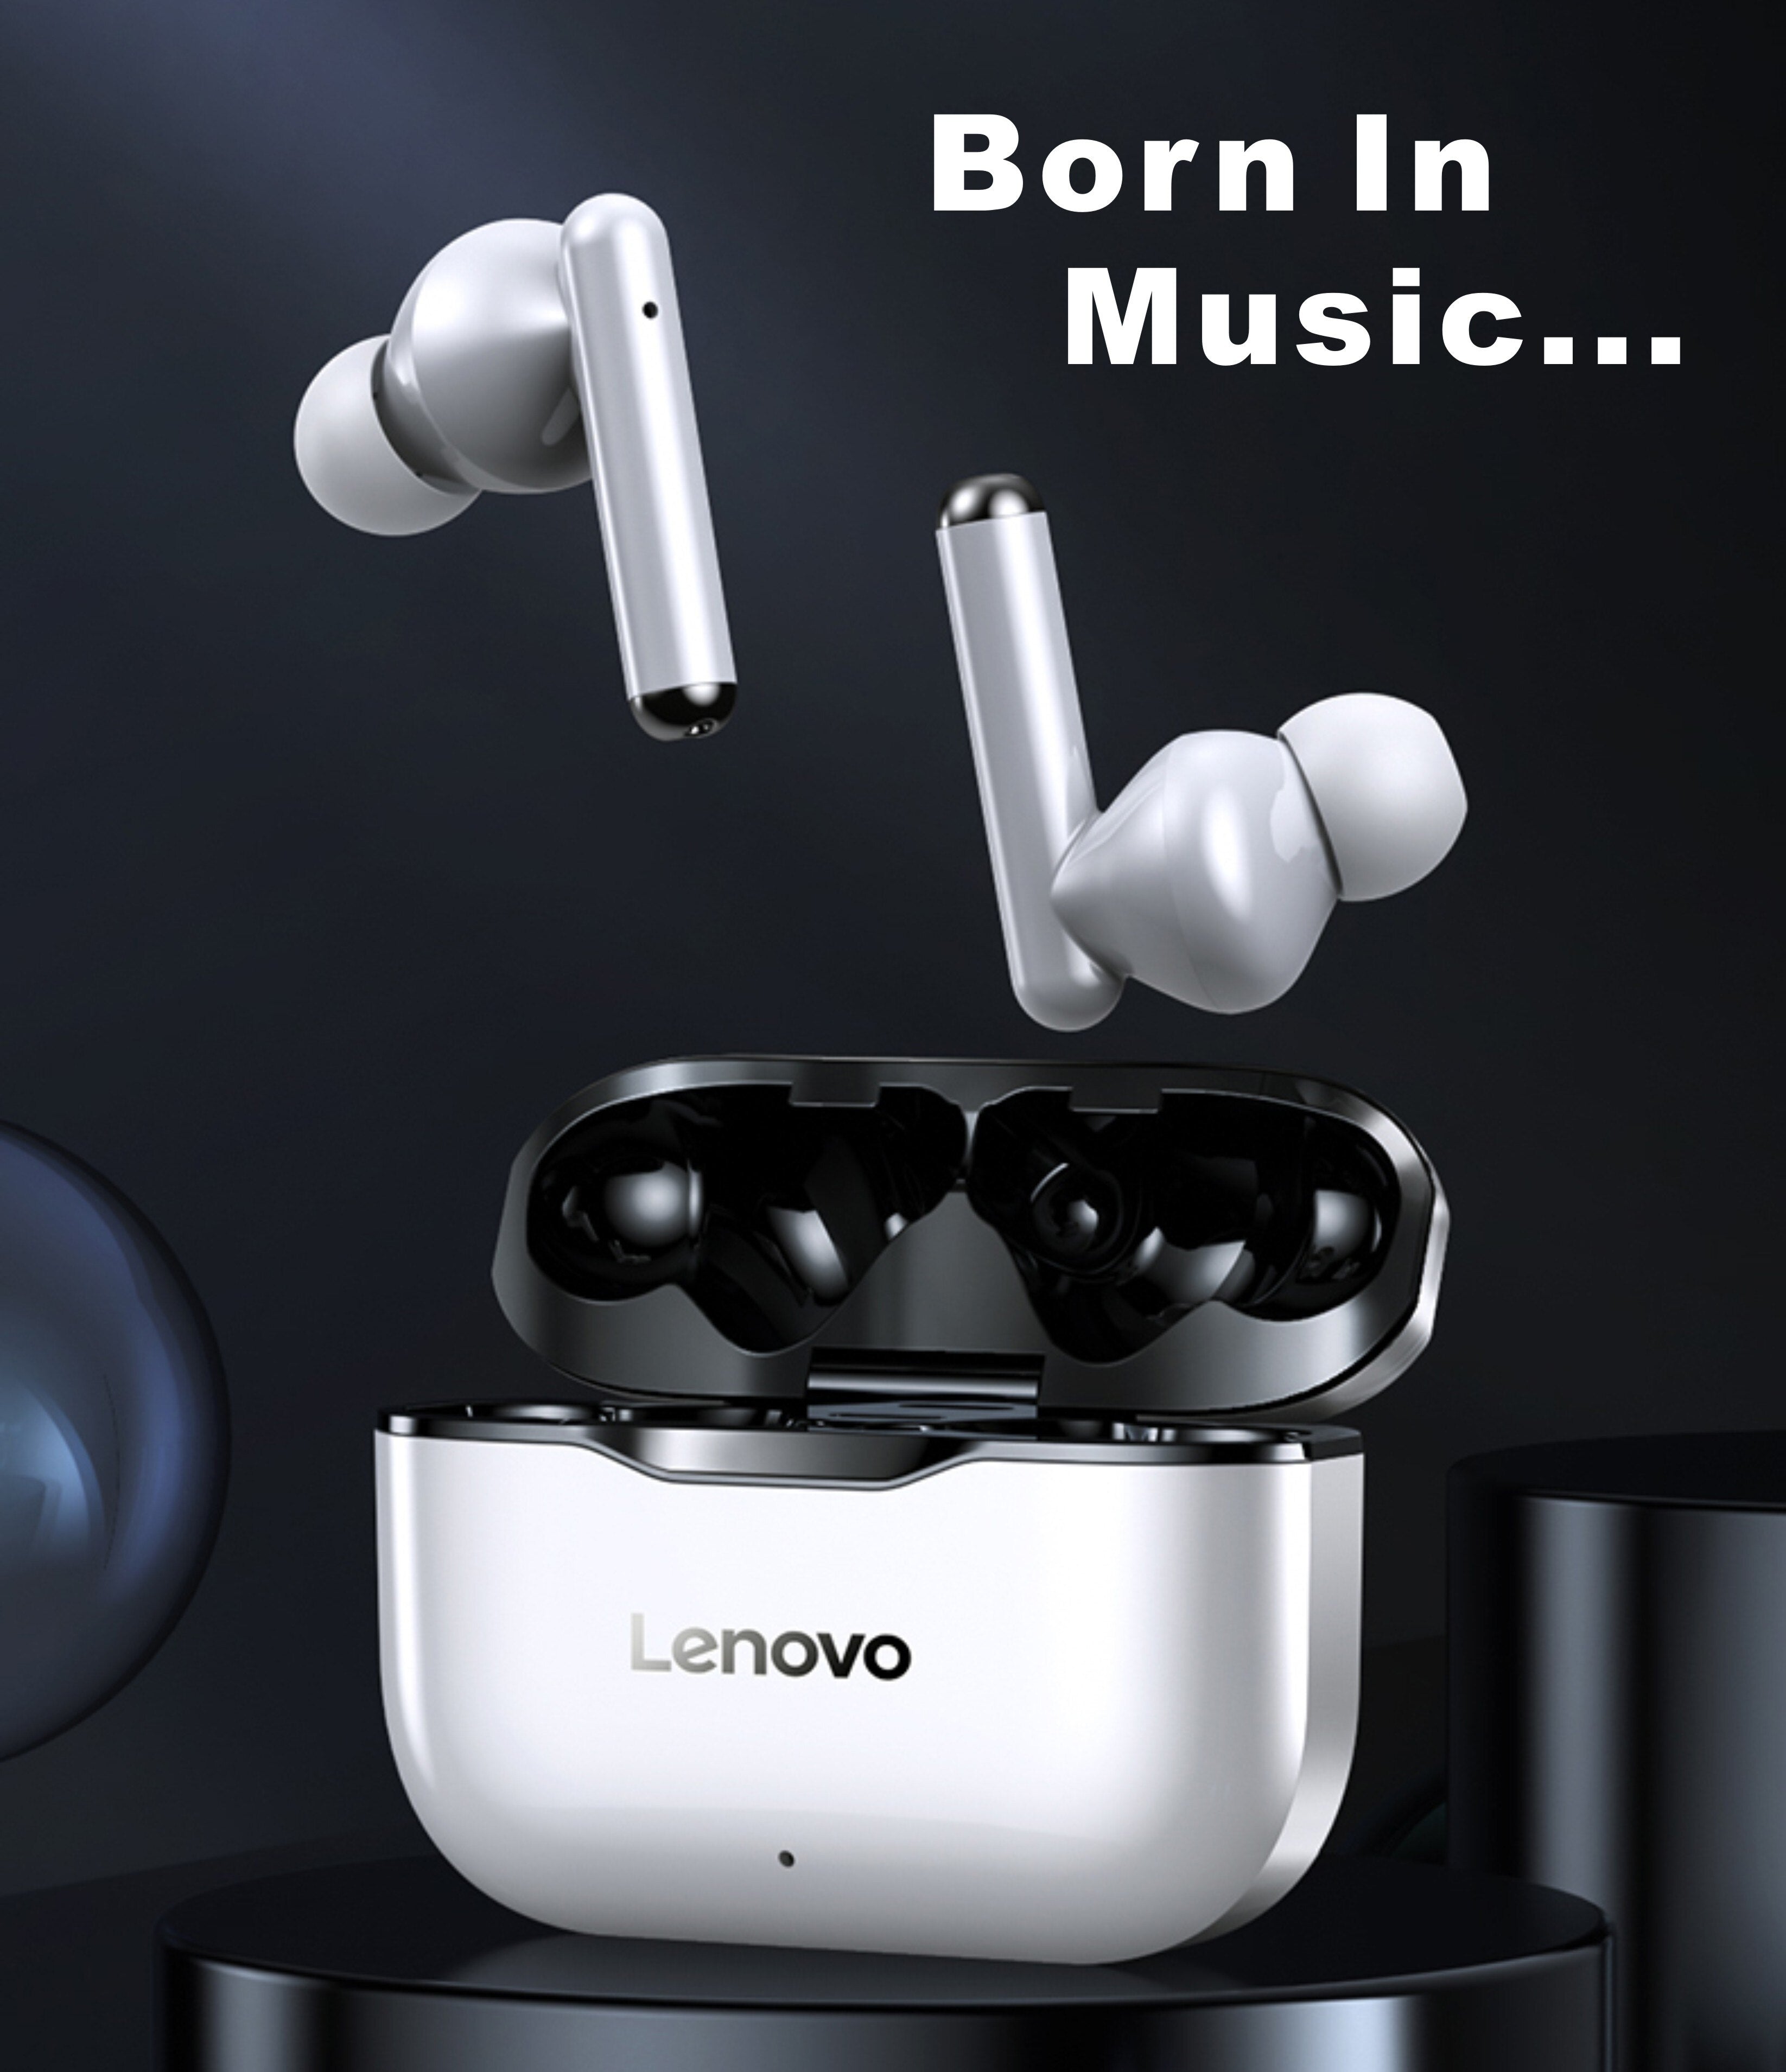 سماعات لينوفو LP1 اللاسلكية سماعات بلوتوث 5.0 مضادة للماء رياضية مع خاصية الغاء الضوضاء وميكروفون مزدوج ستيريو HIFI Bass Touch